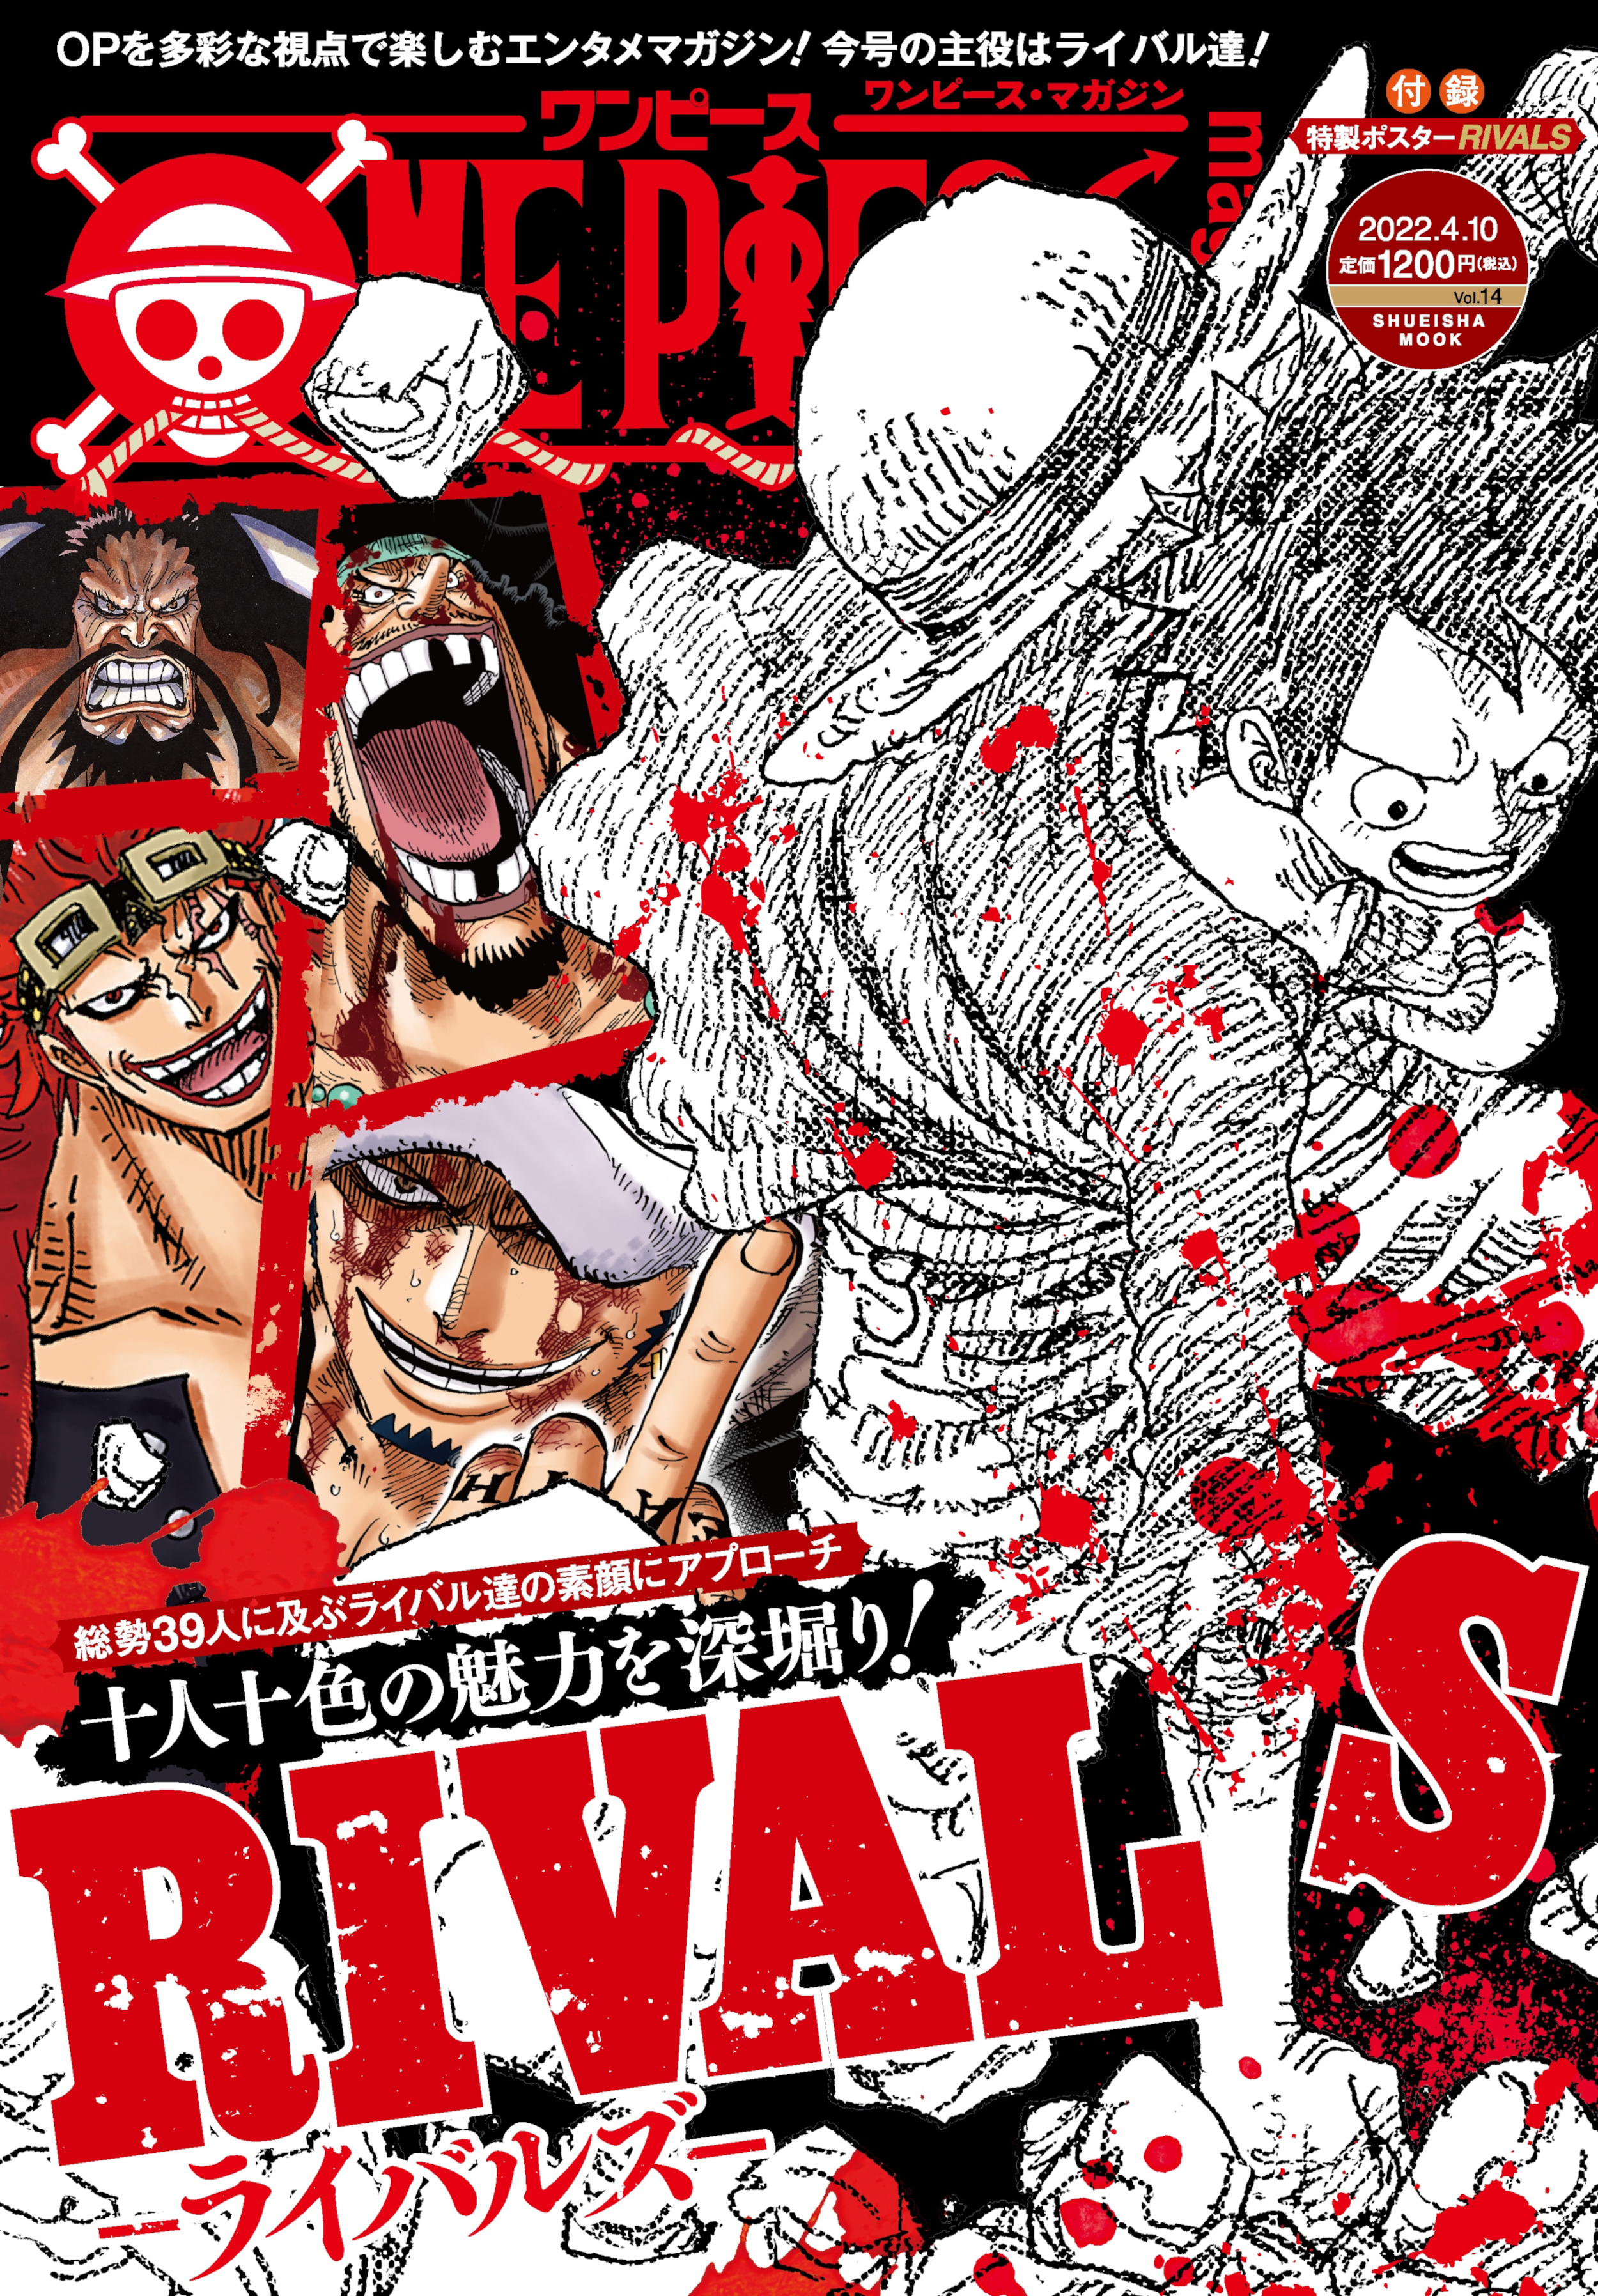 One Piece Magazine Vol.14 | One Piece Wiki | Fandom